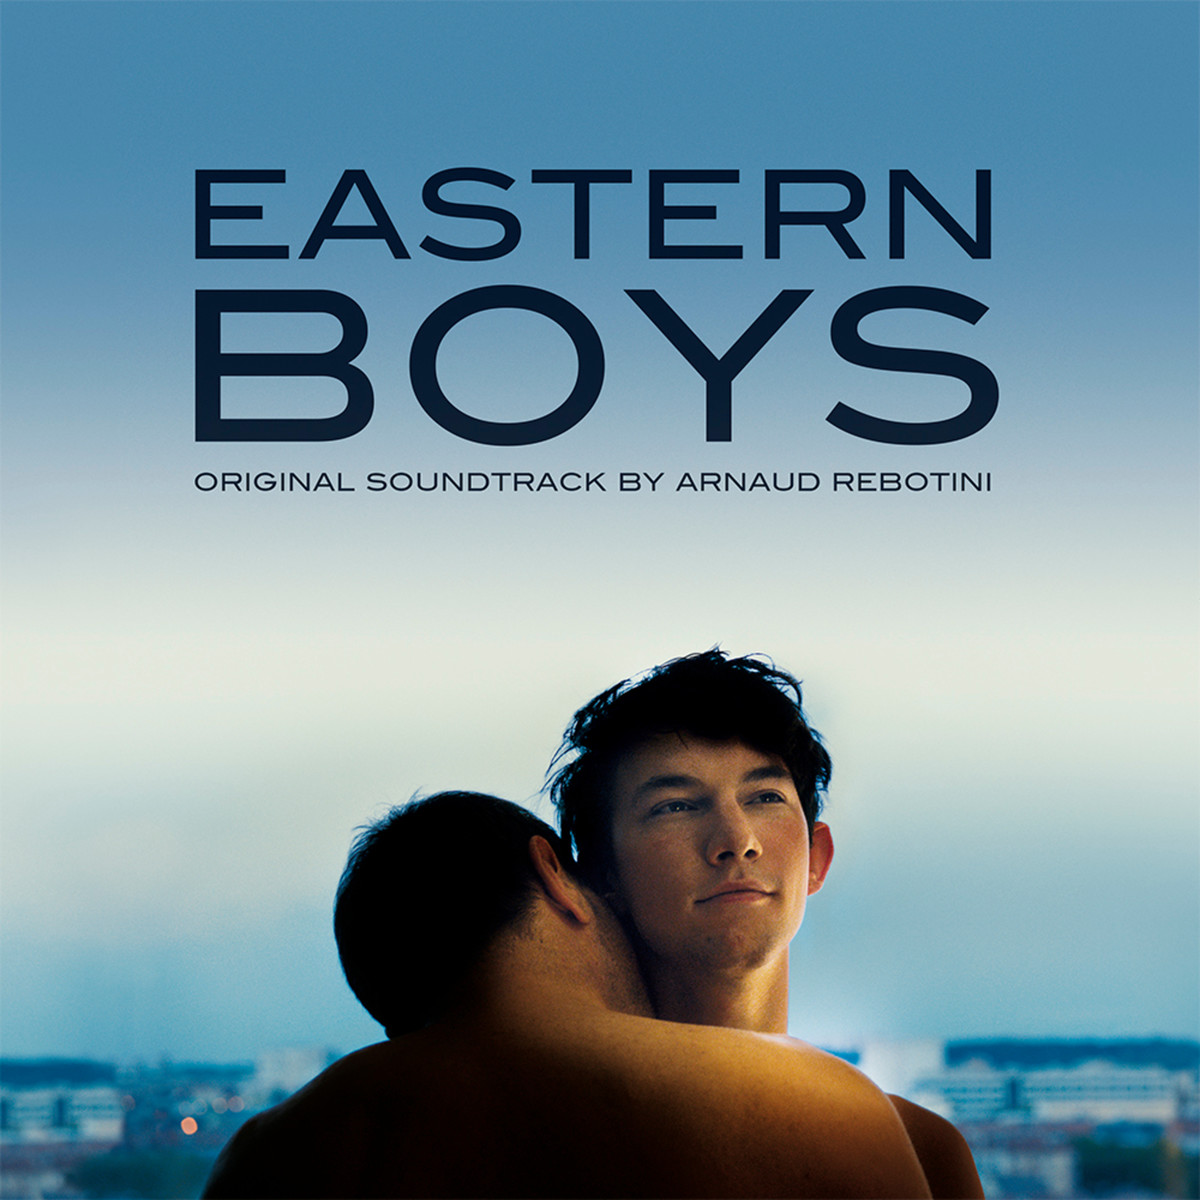 Pochette de "Eastern Boys" extraite du Soundcloud du label